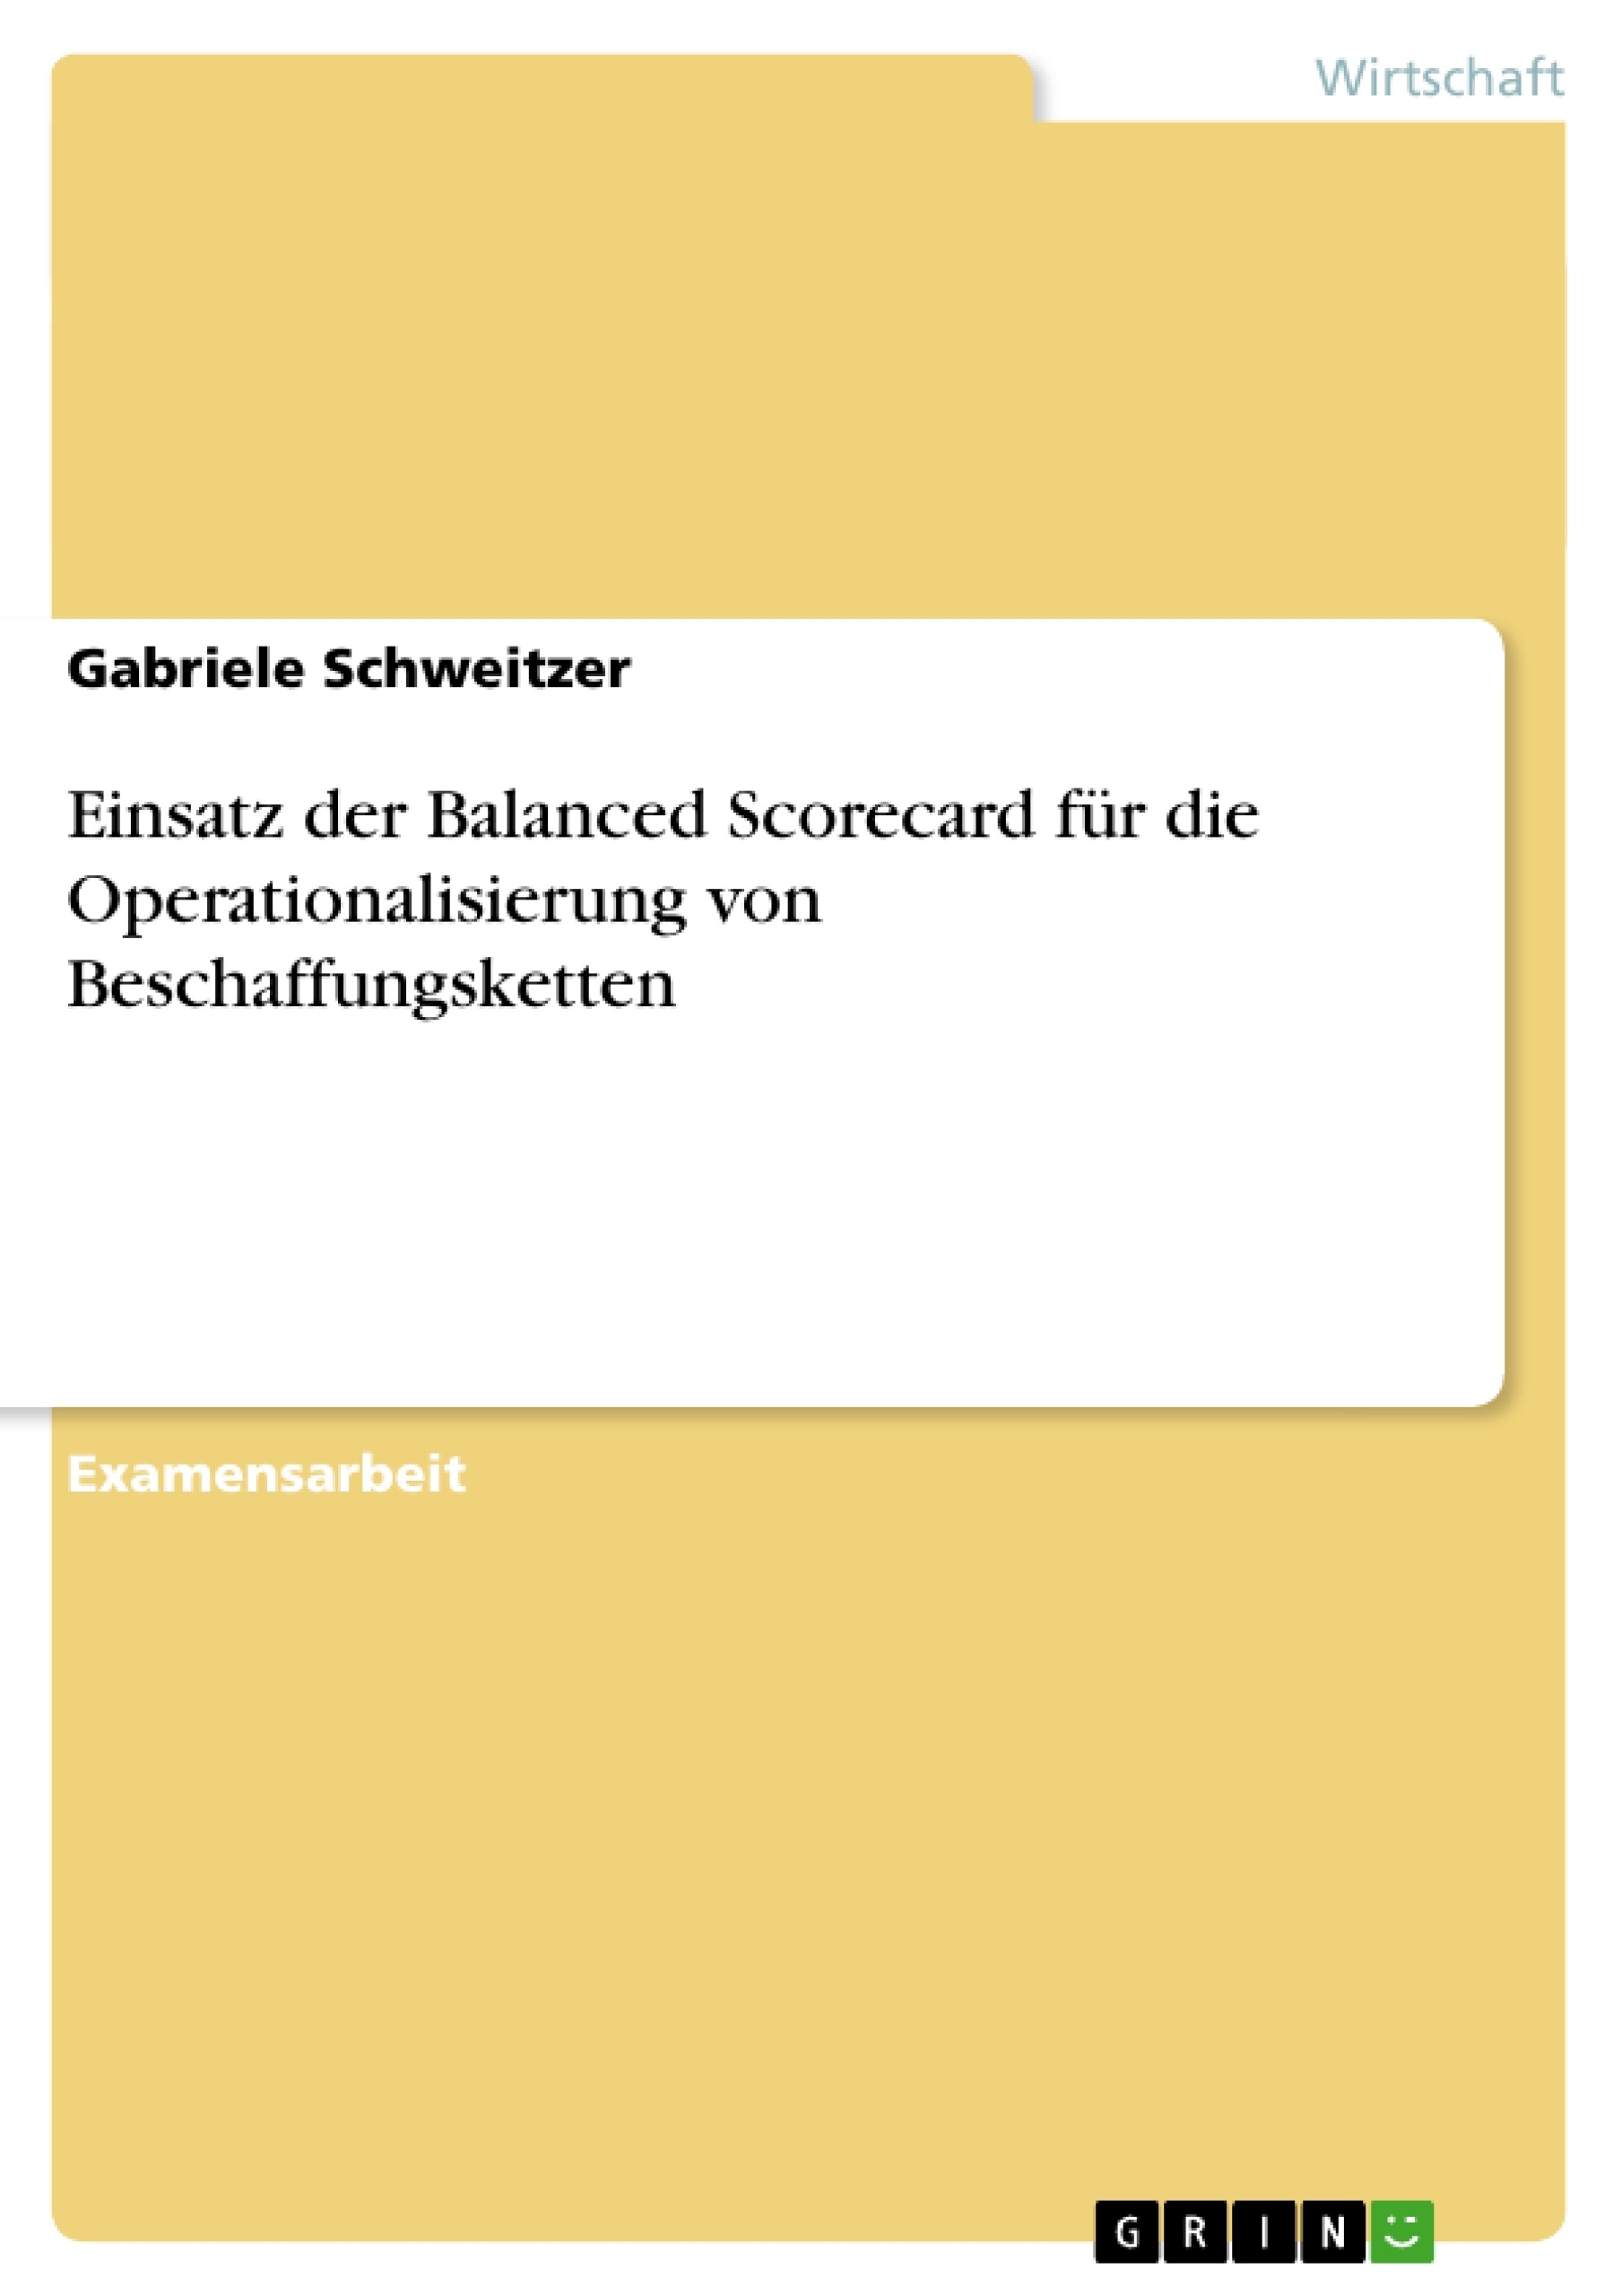 Title: Einsatz der Balanced Scorecard für die Operationalisierung von Beschaffungsketten